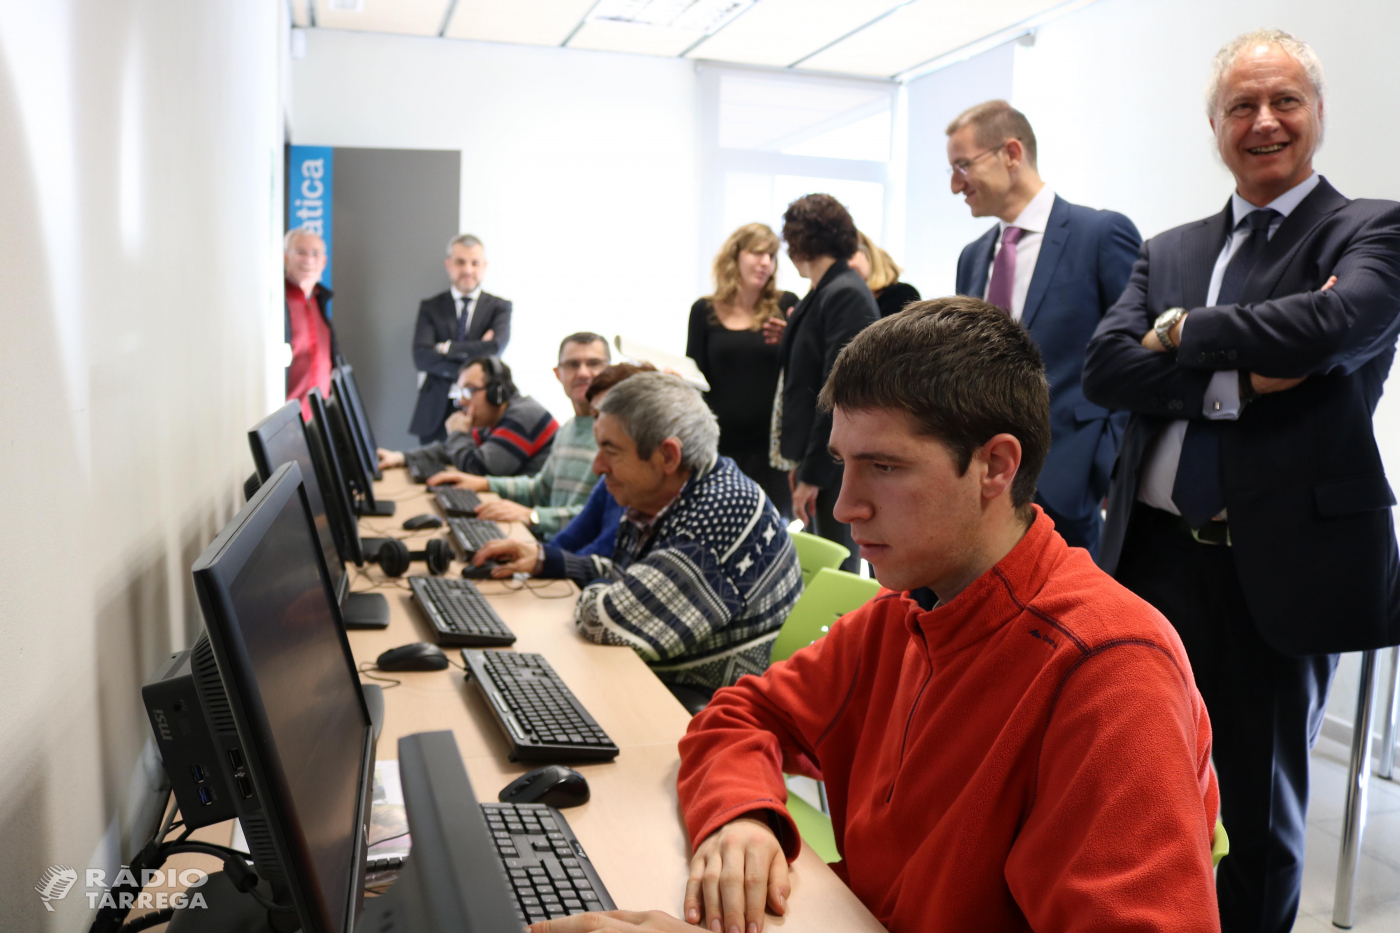 El Grup Alba inaugura nous equipaments informàtics gràcies al projecte de crowdfunding 'Connectats al món' impulsat conjuntament amb CaixaBank